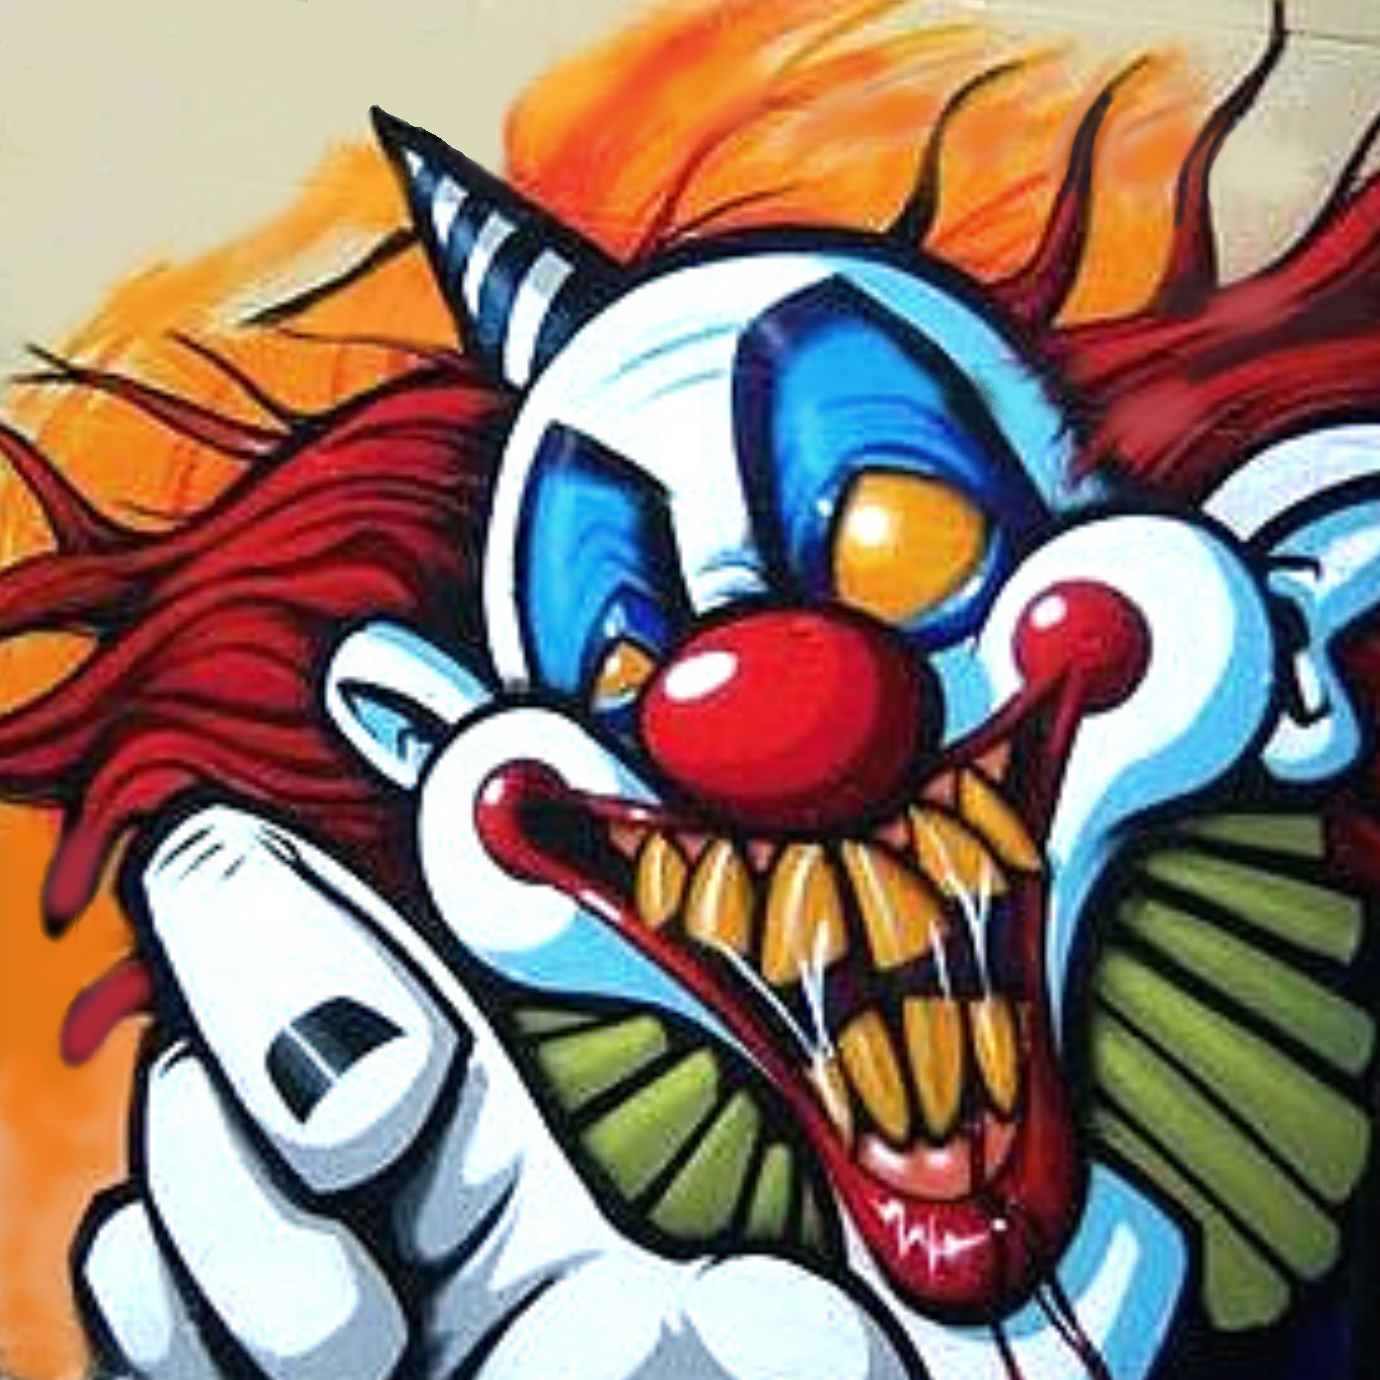 Evil Clown Mini Cornhole Bag